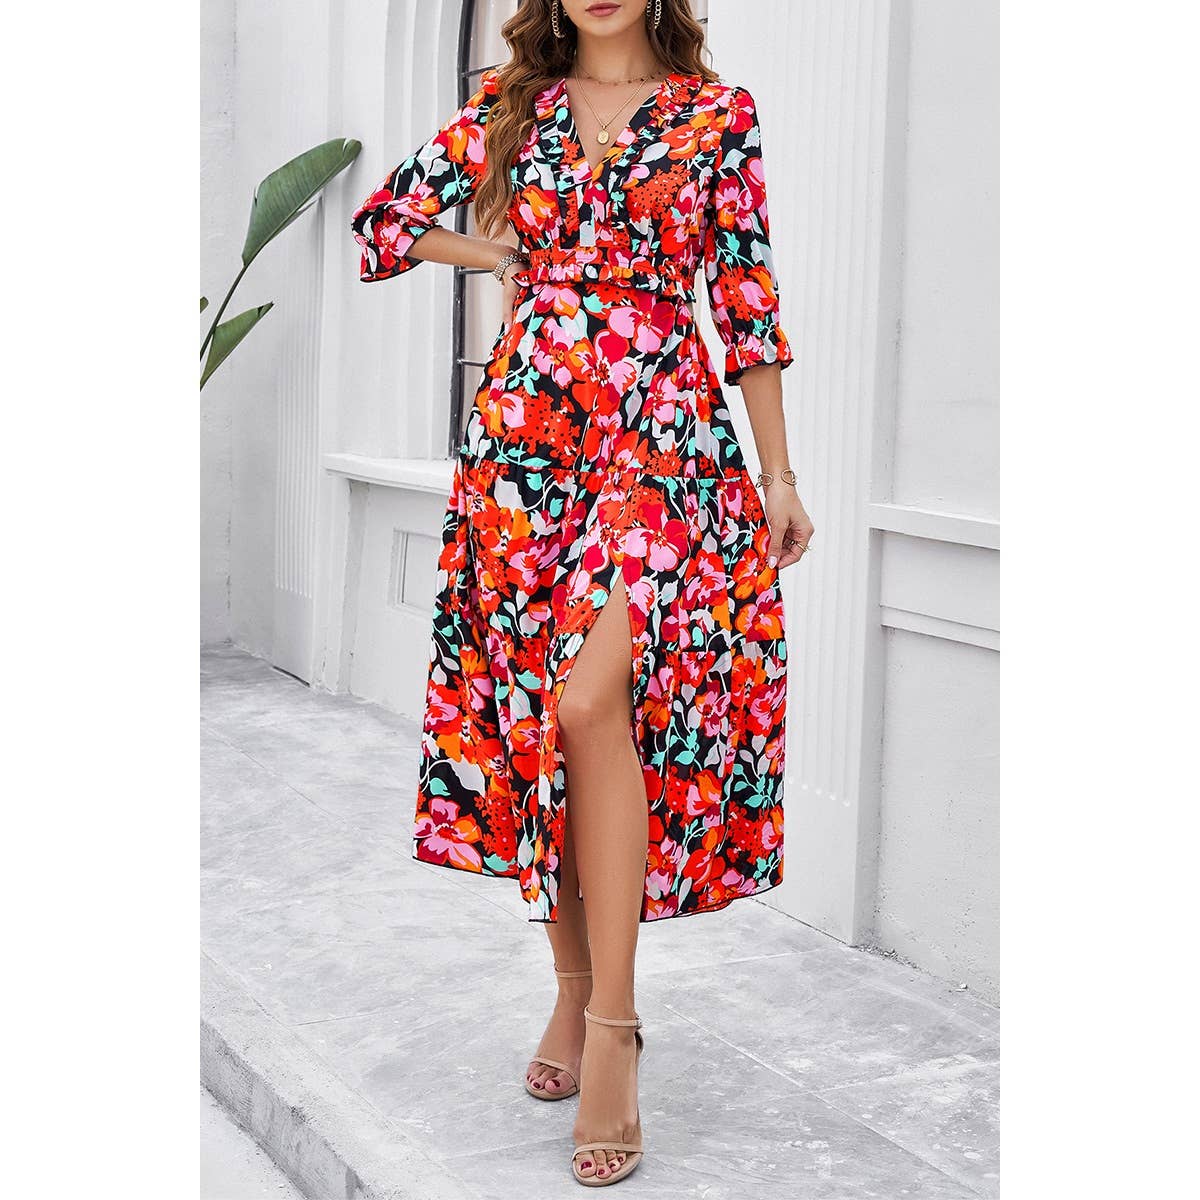 Color Block Floral Ruffle Trim Belt A Line Dress - MVTFASHION.COM